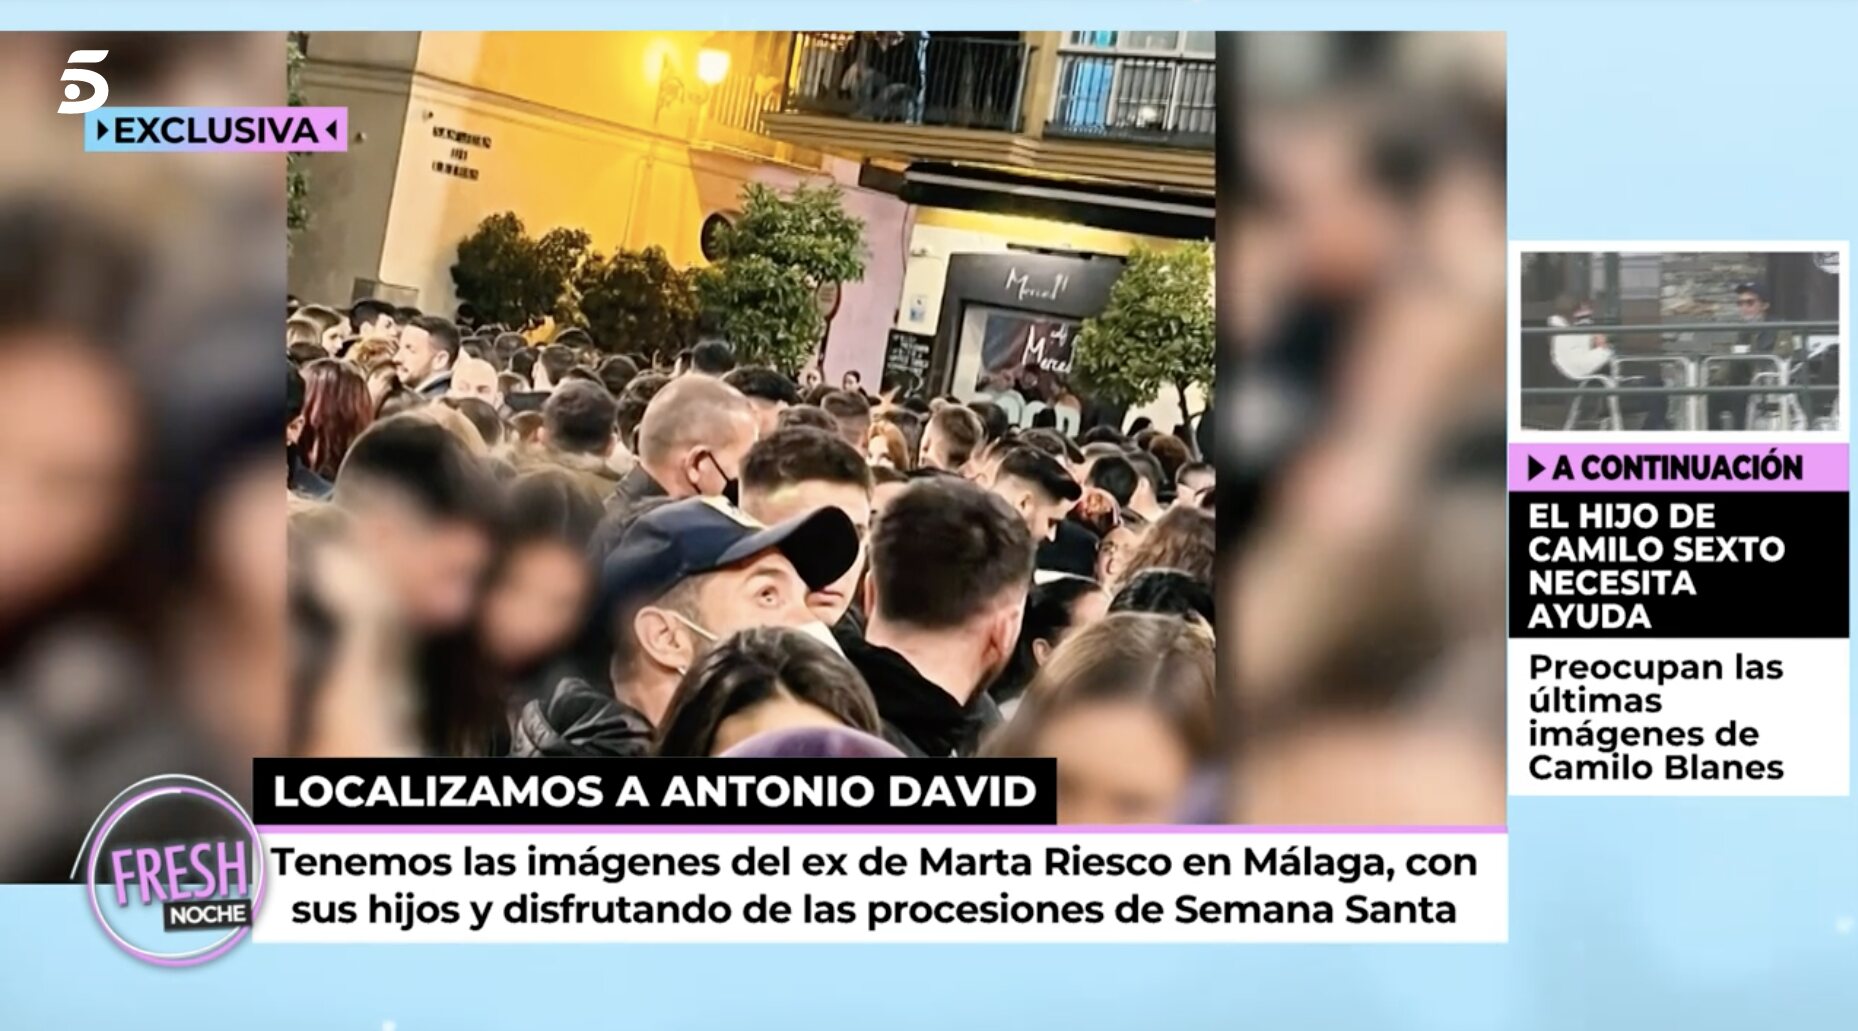 Antonio David, disfrutando de la Semana Santa en Málaga | Foto: Telecinco.es